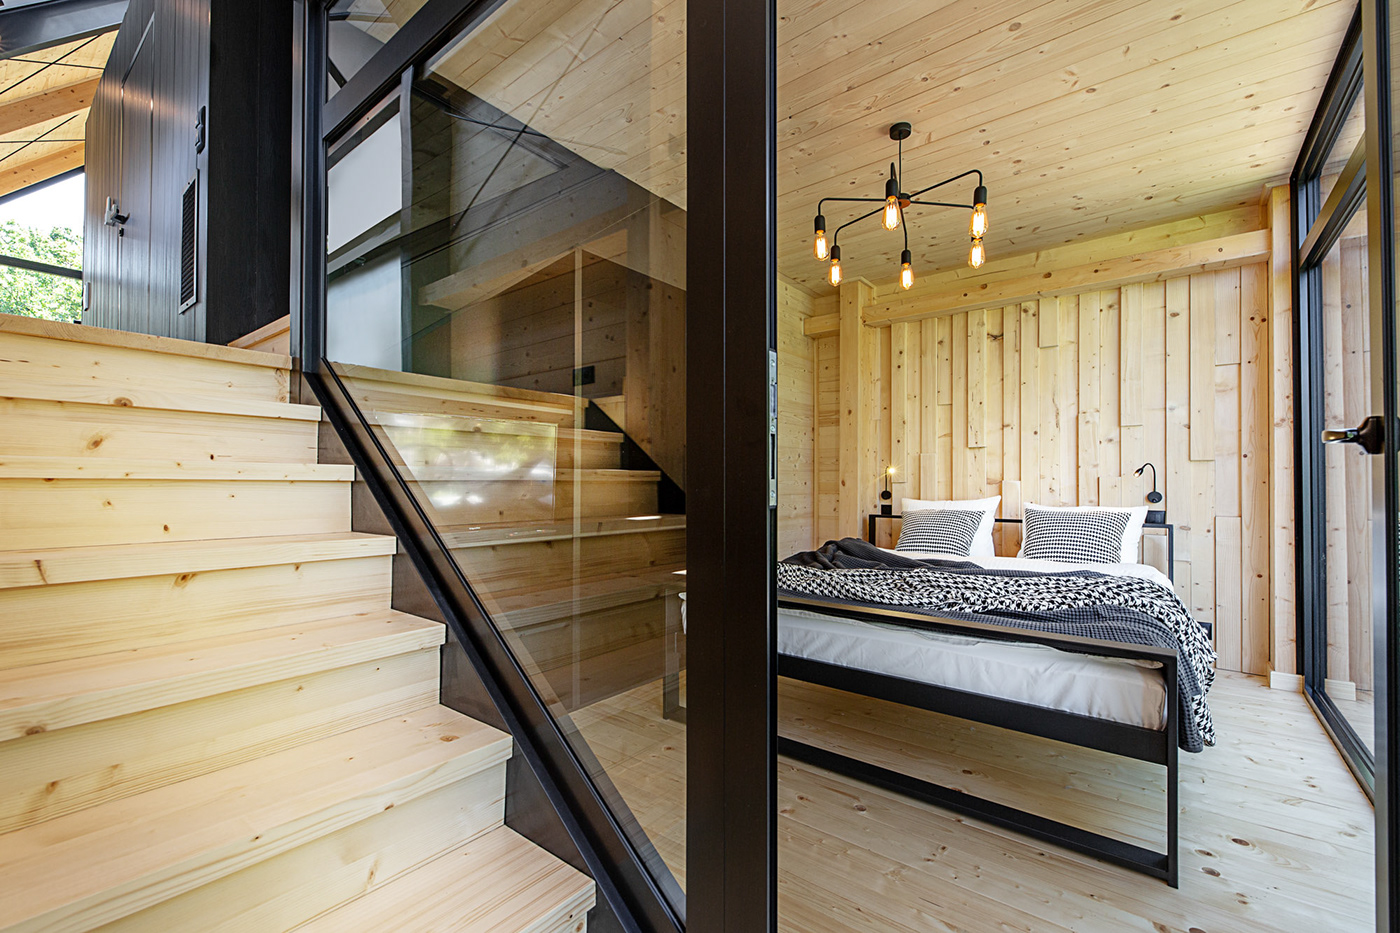 architecture Interior Seaside Spa relax house wood poland mode:lina modelina architekci